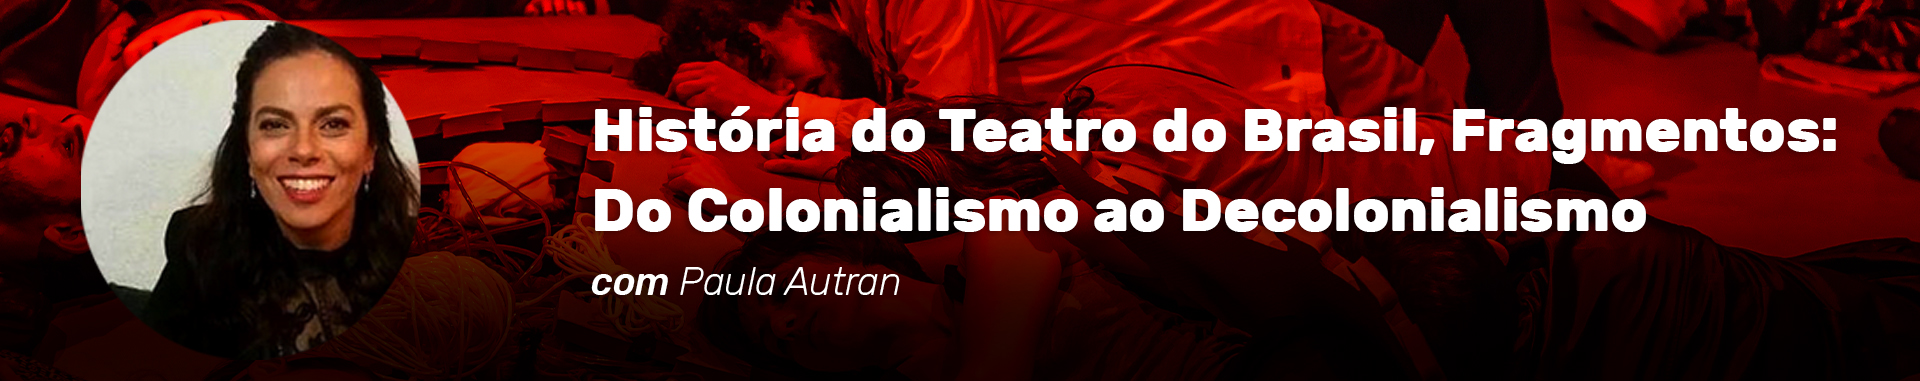 Cabeçalho do curso História do Teatro do Brasil, Fragmentos: Do Colonialismo ao Decolonialismo